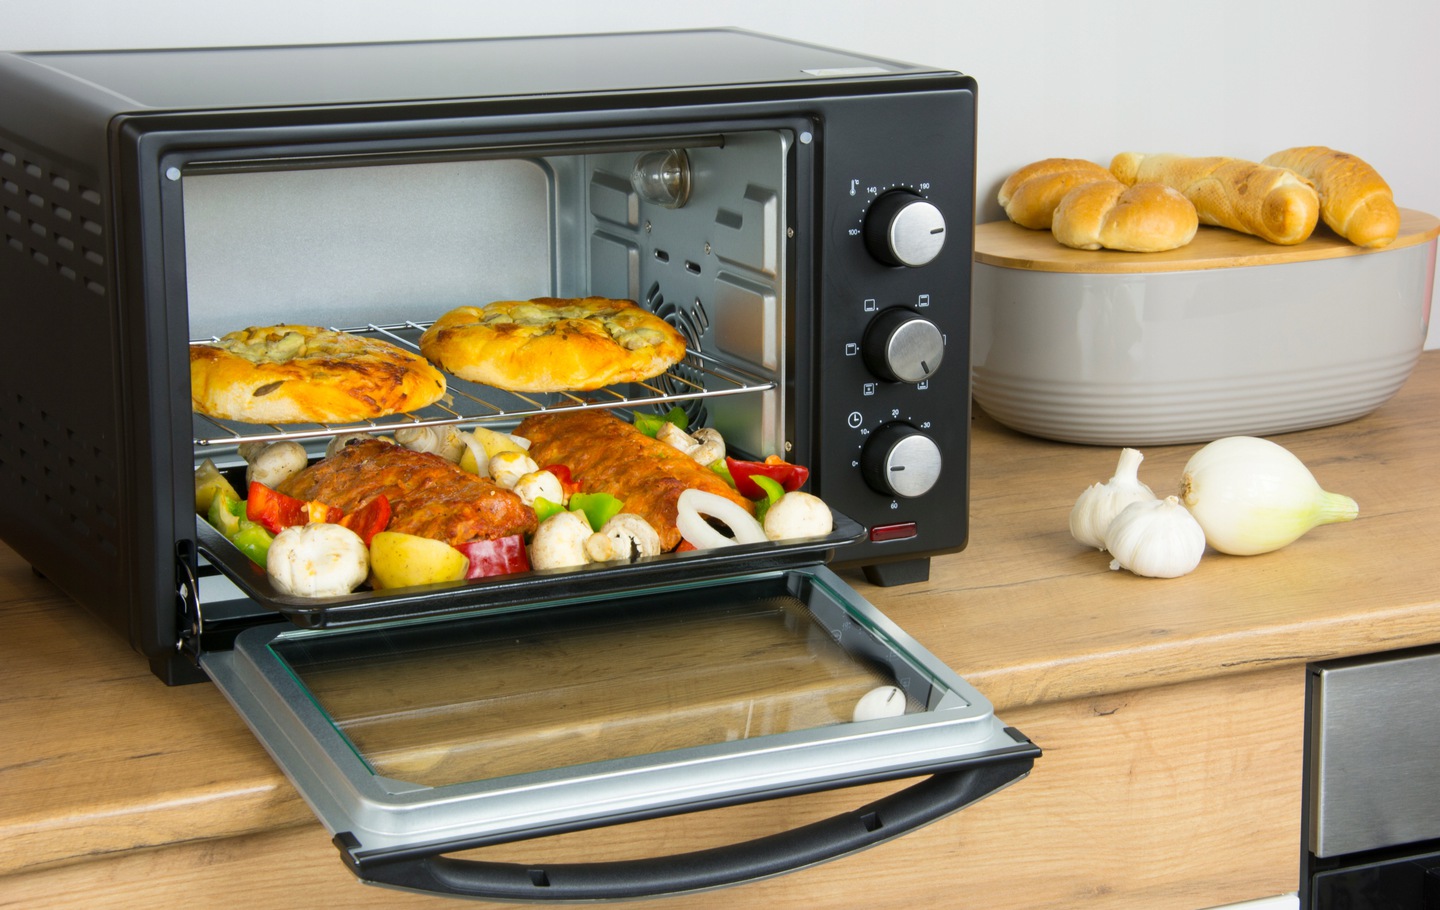 Хлеб в мультиварке - пошаговые рецепты с фото. как испечь вкусный домашний хлеб на дрожжах и бездрожжевой